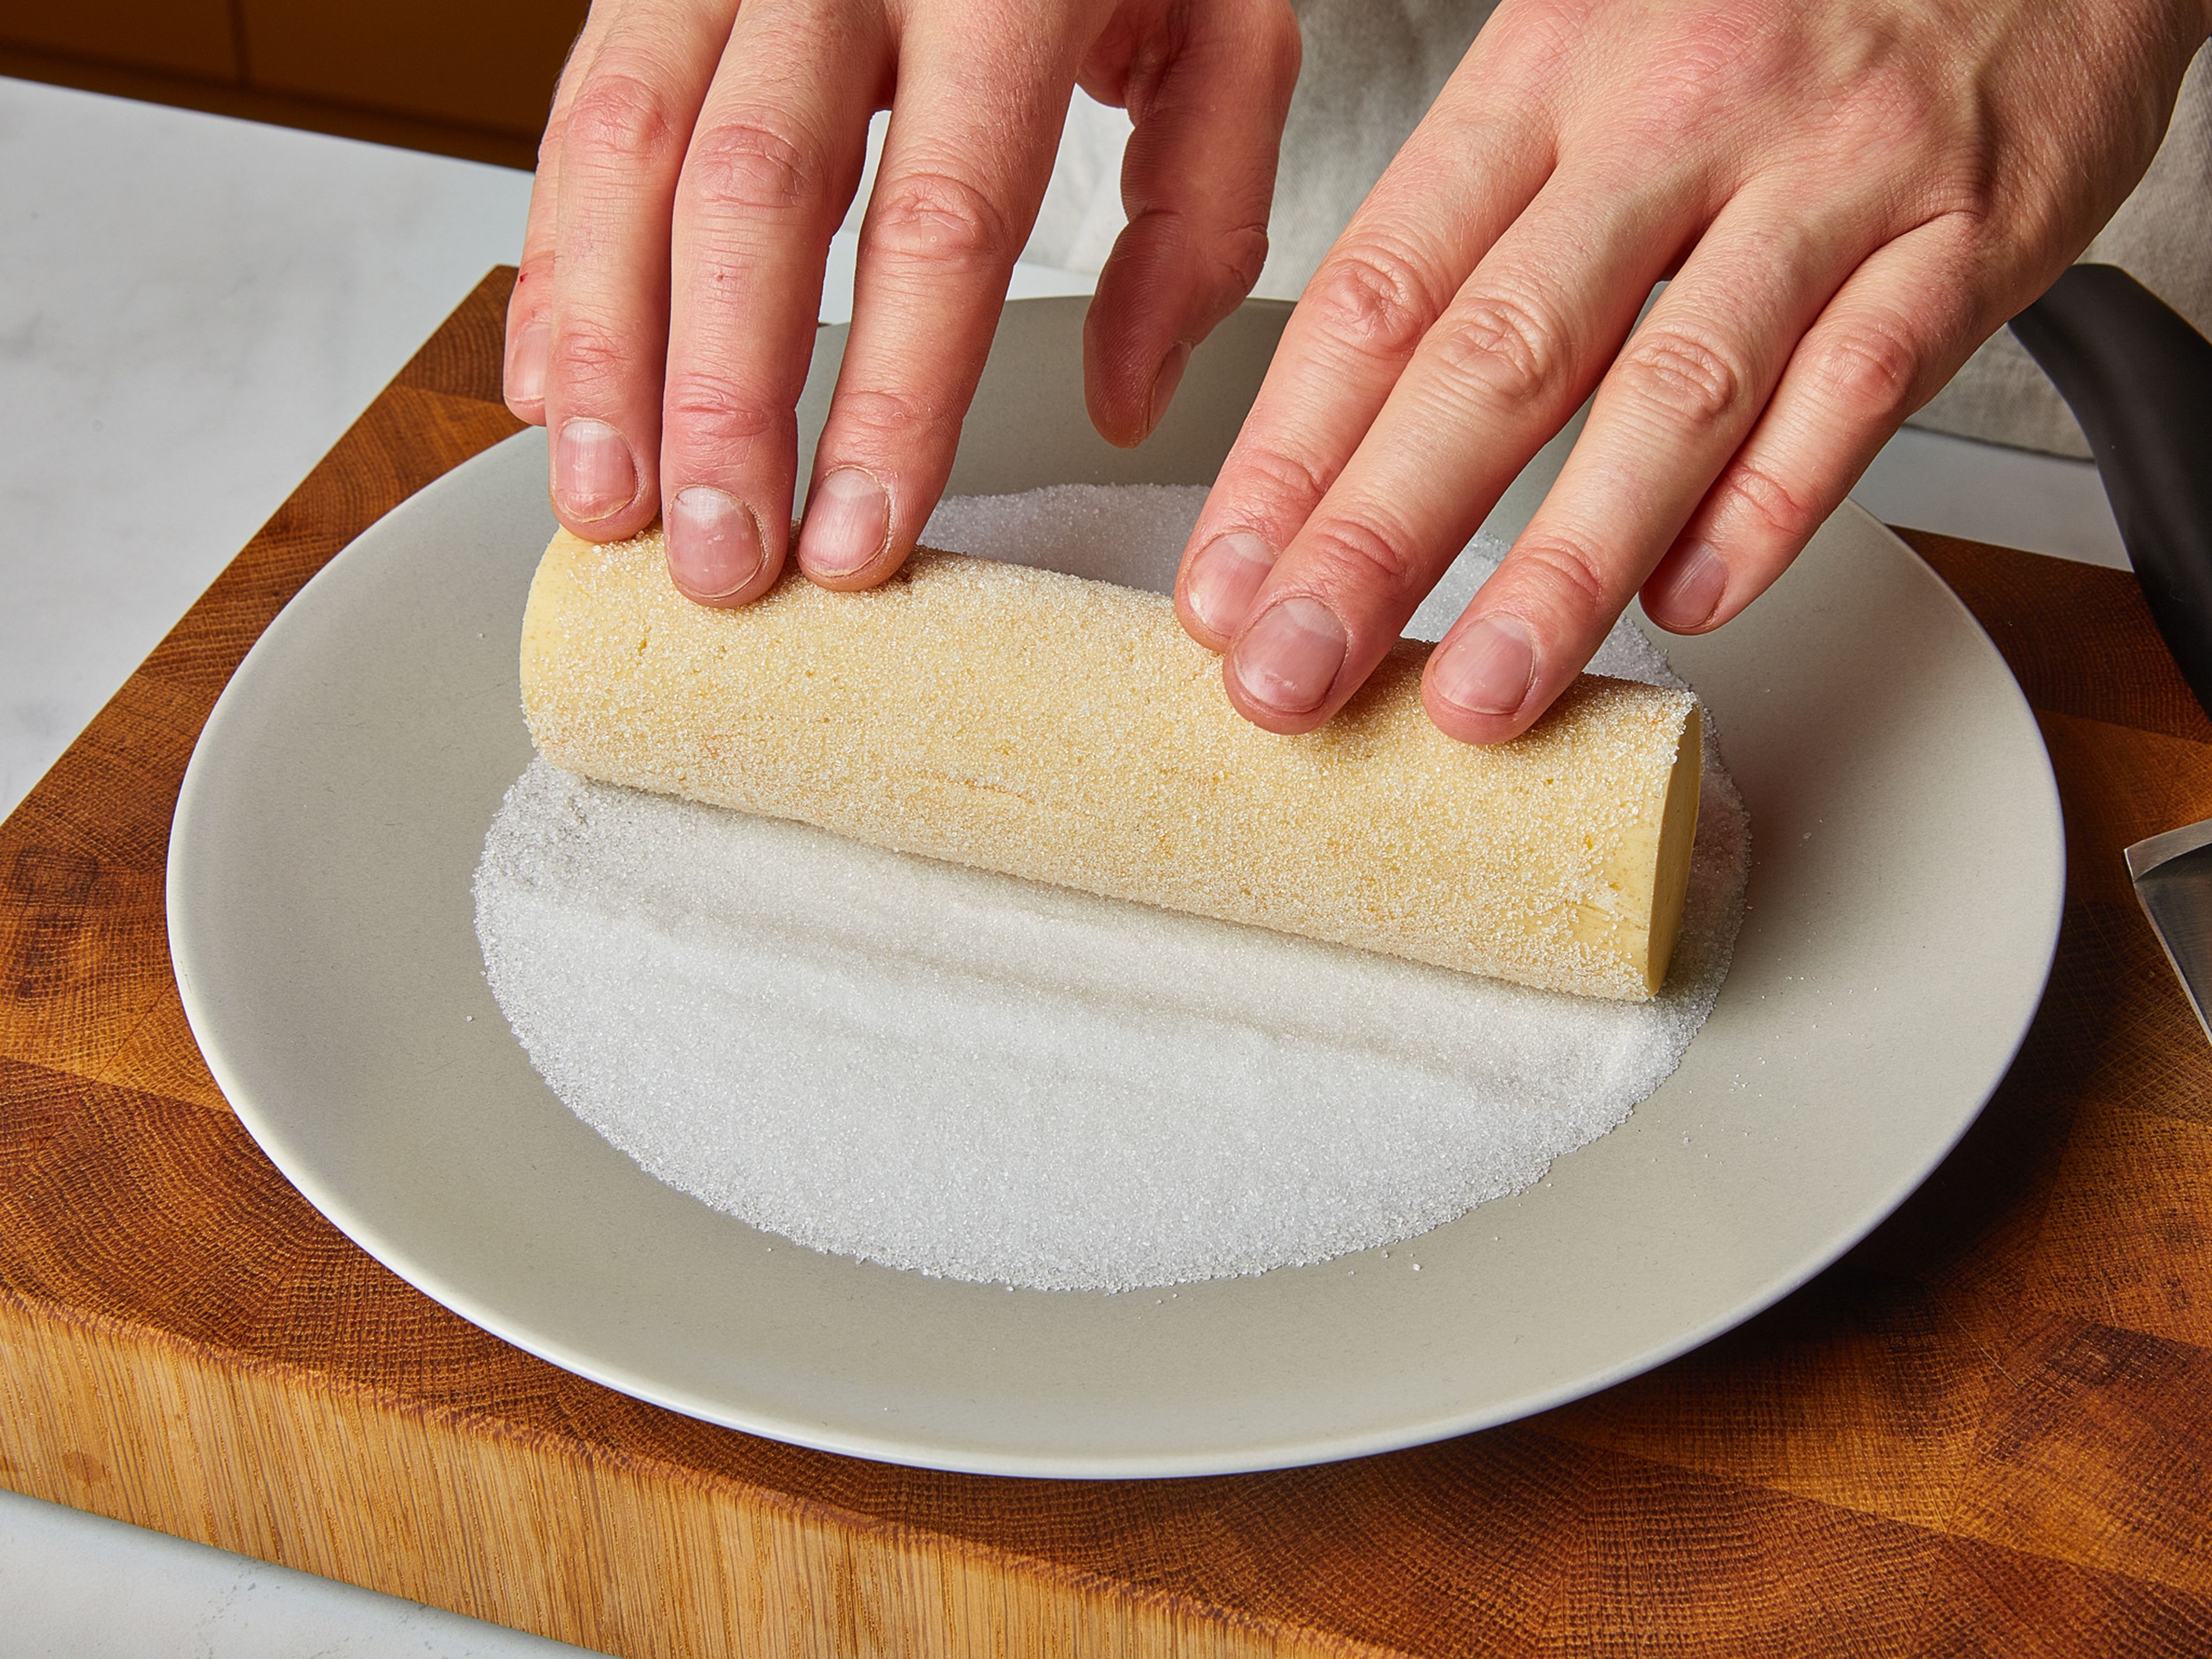 Zum Backen der Plätzchen den Ofen auf 170°C vorheizen. Den Teig herausnehmen und die Plastikfolie entfernen. Etwas Zucker in einen tiefen Teller streuen. Die Teigrollen gleichmäßig im Zucker wälzen, damit die Ränder nach dem Backen besonders knusprig werden.